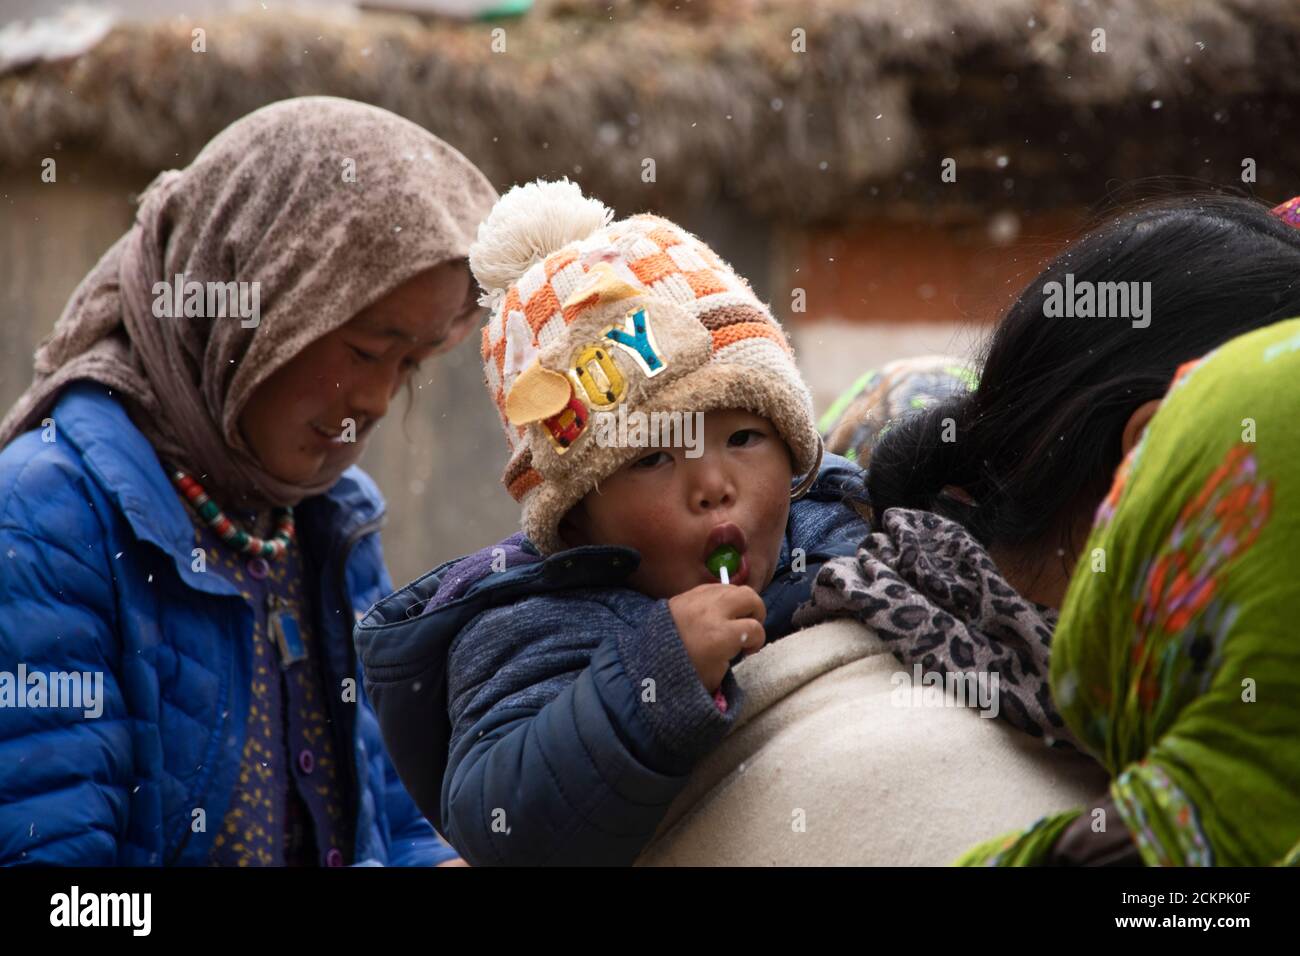 Fröhliche Menschen im Murdorf, dem letzten Dorf des Pin Valley an einem verschneiten Tag, versammeln sich auf einem Marktplatz. Eine Mutter trägt ihr Kind. Stockfoto